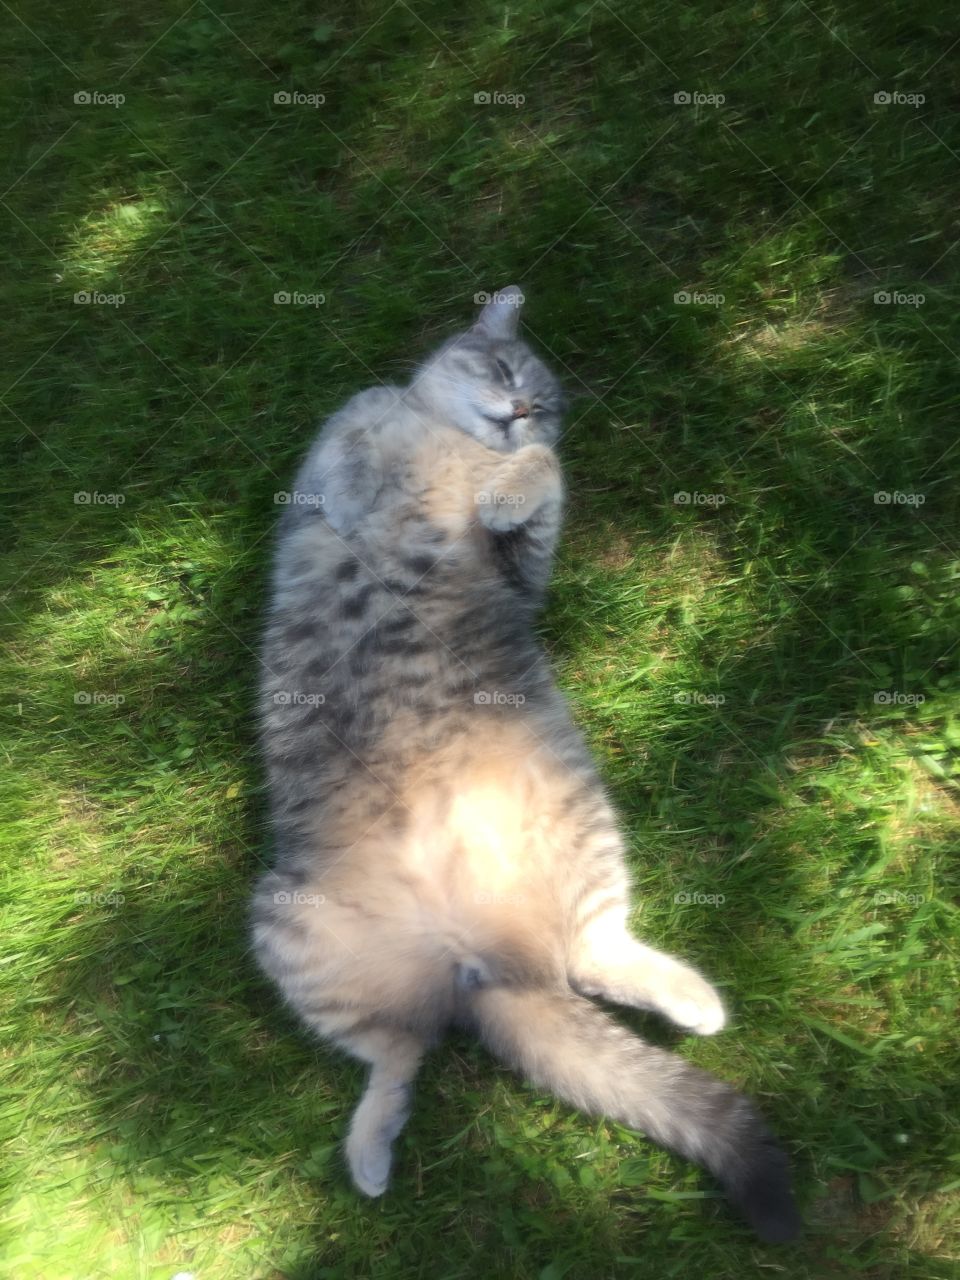 Love my fat cat chillin’ 